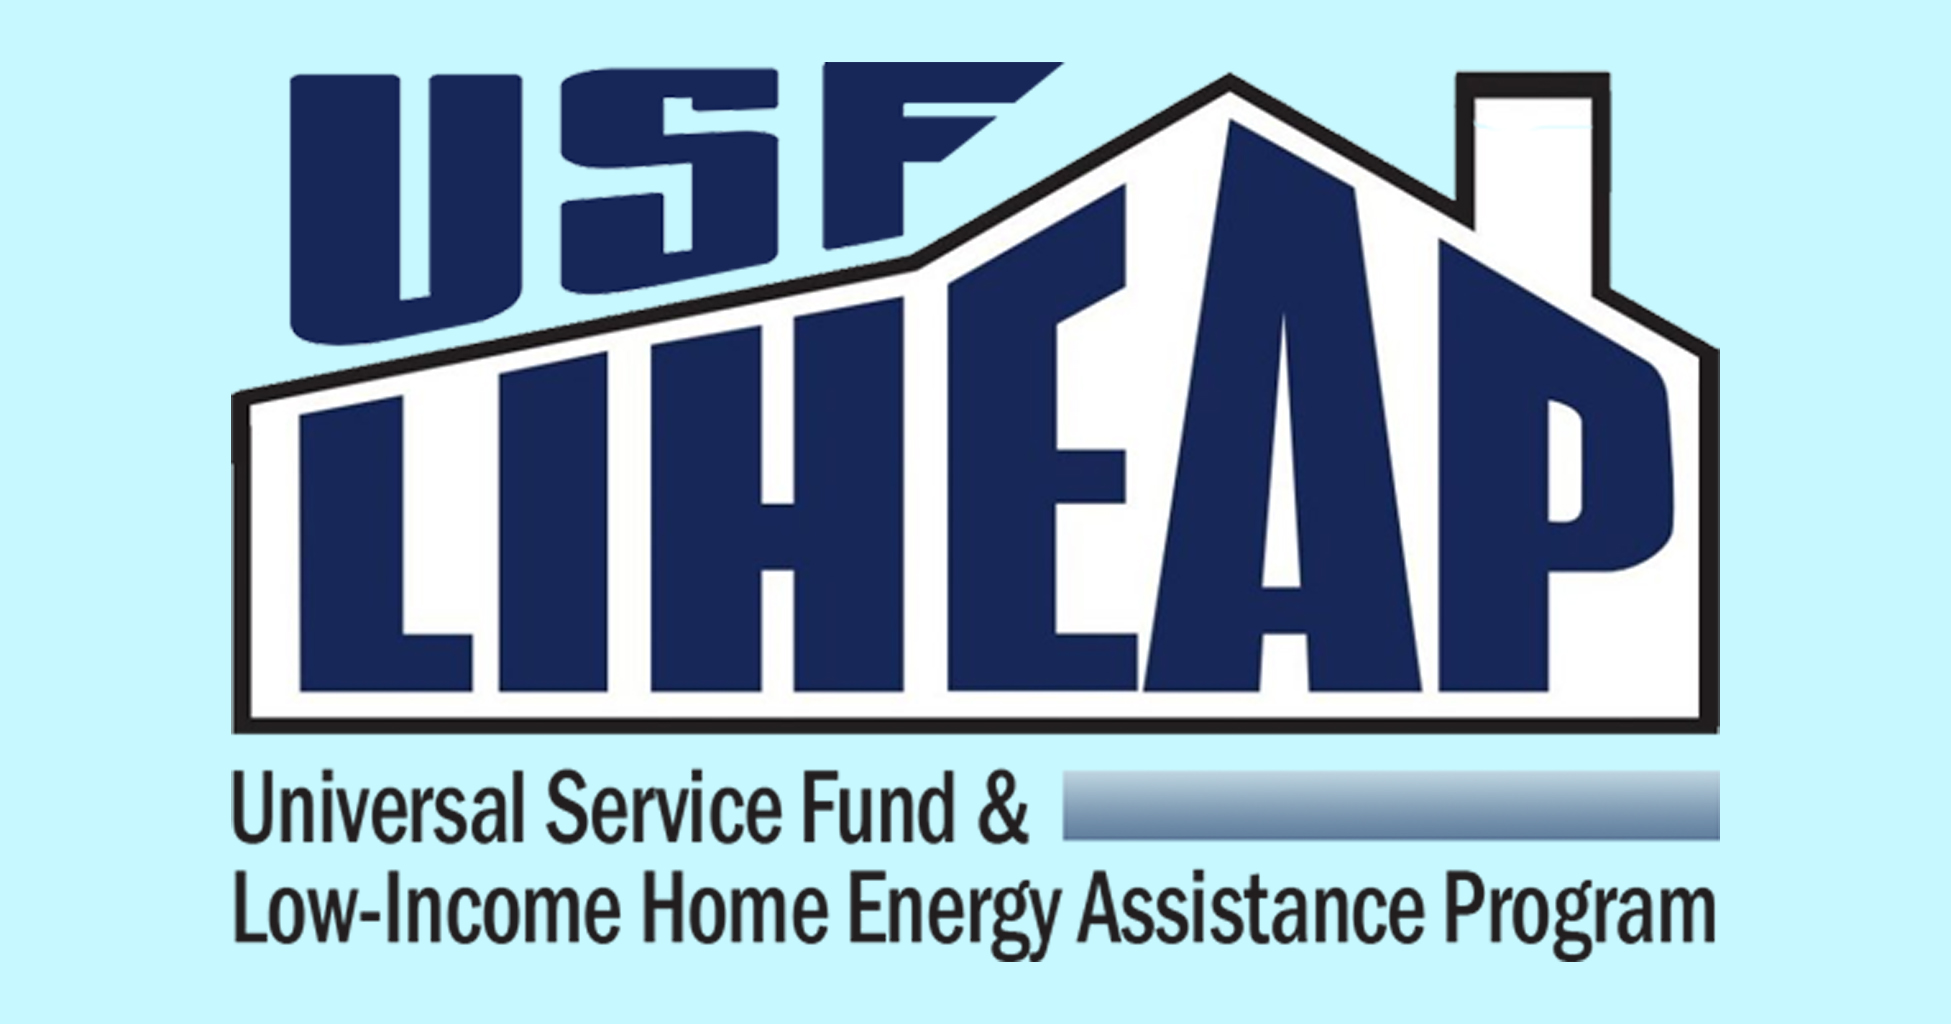 LIHEAP logo in stylized house